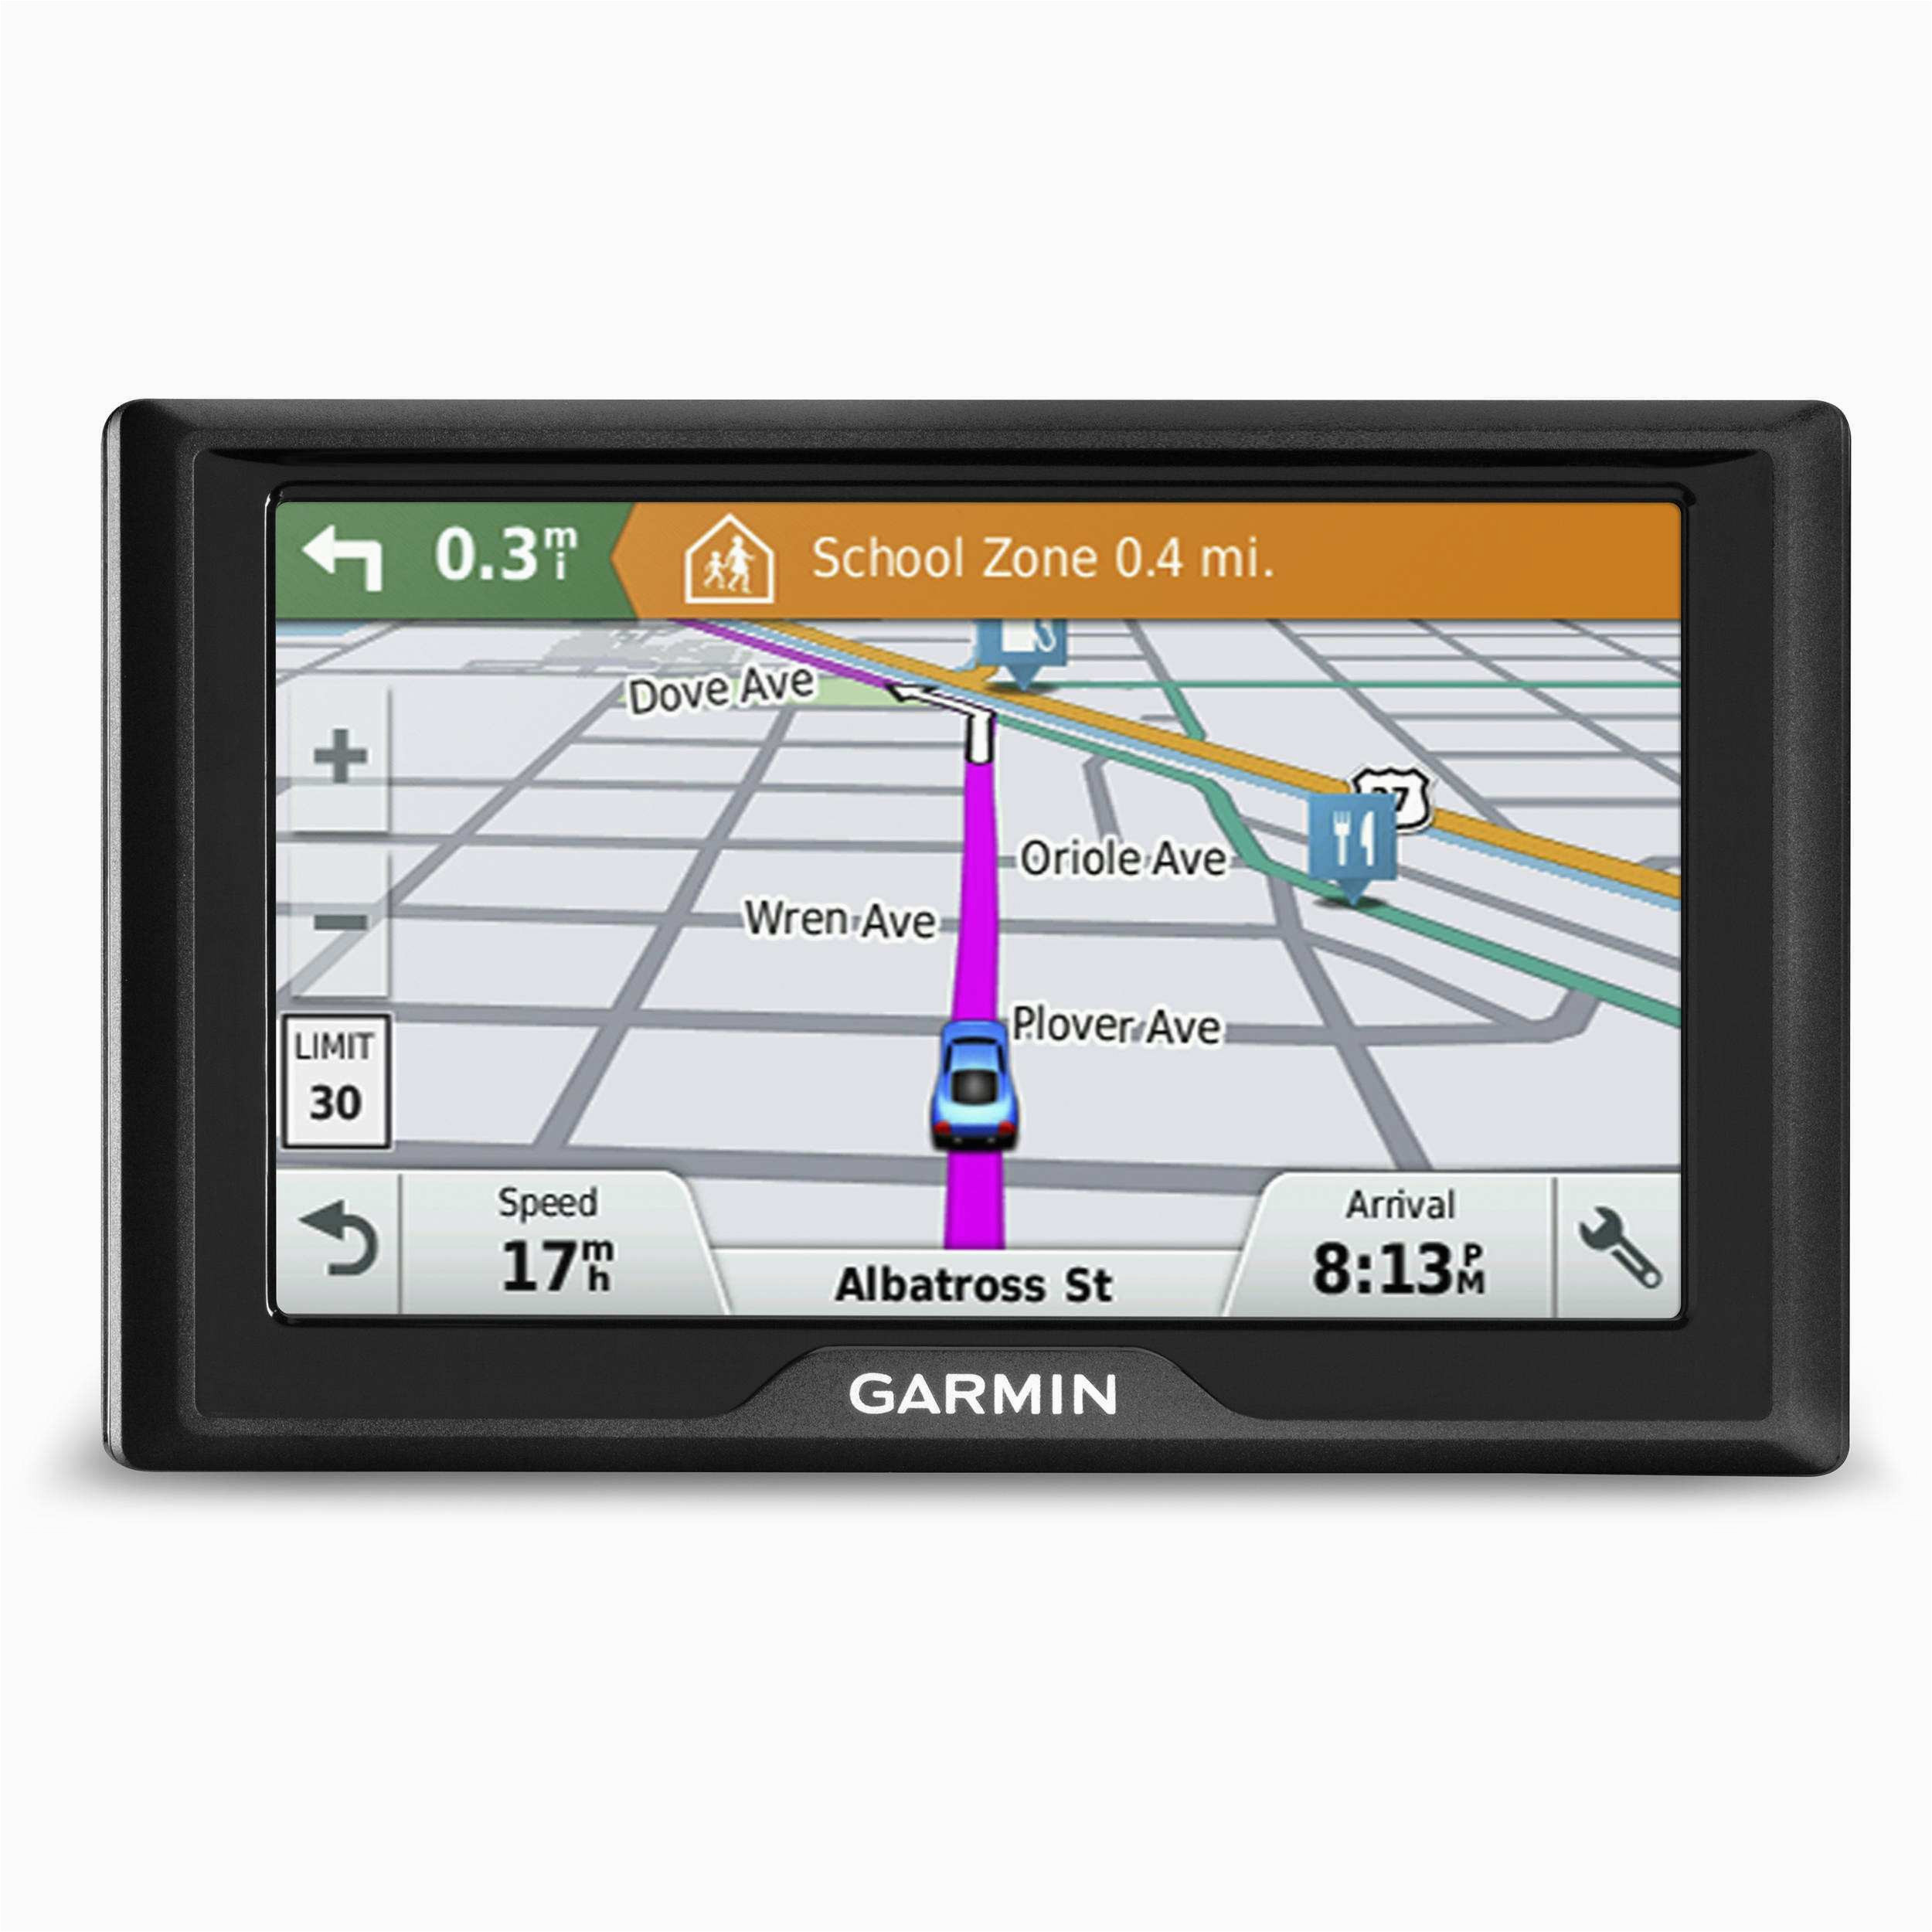 58 best of garmin gps car navigation systems gallery tanningpitt com